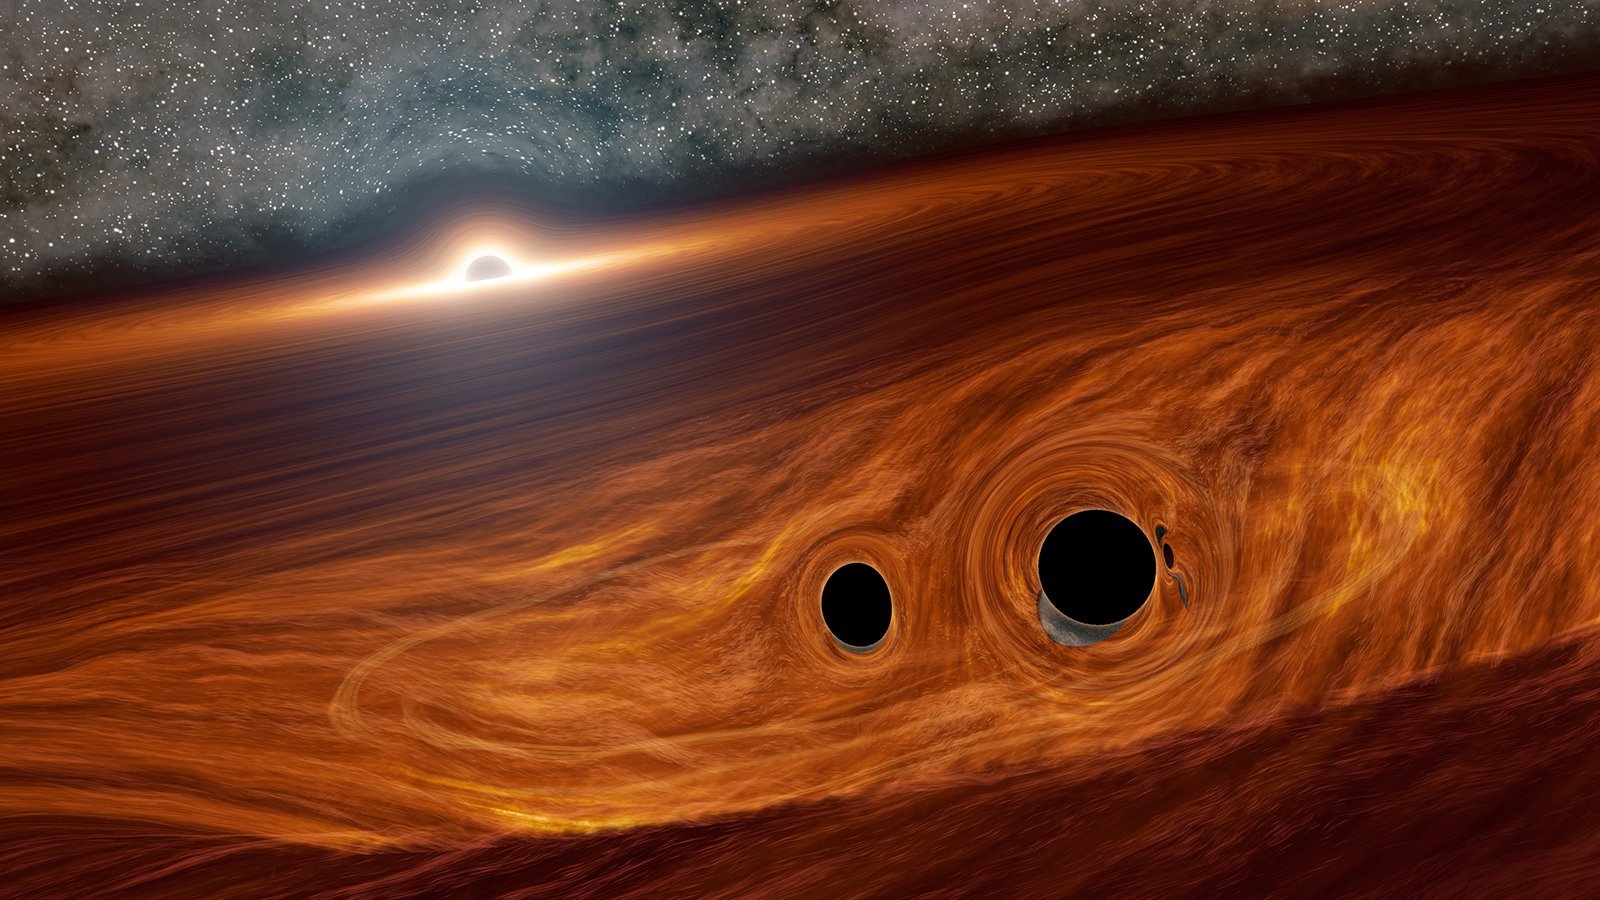 Conceito visual de um buraco negro supermassivo e seu disco circundante de gás. Embutidos neste disco estão dois buracos negros menores em órbita.